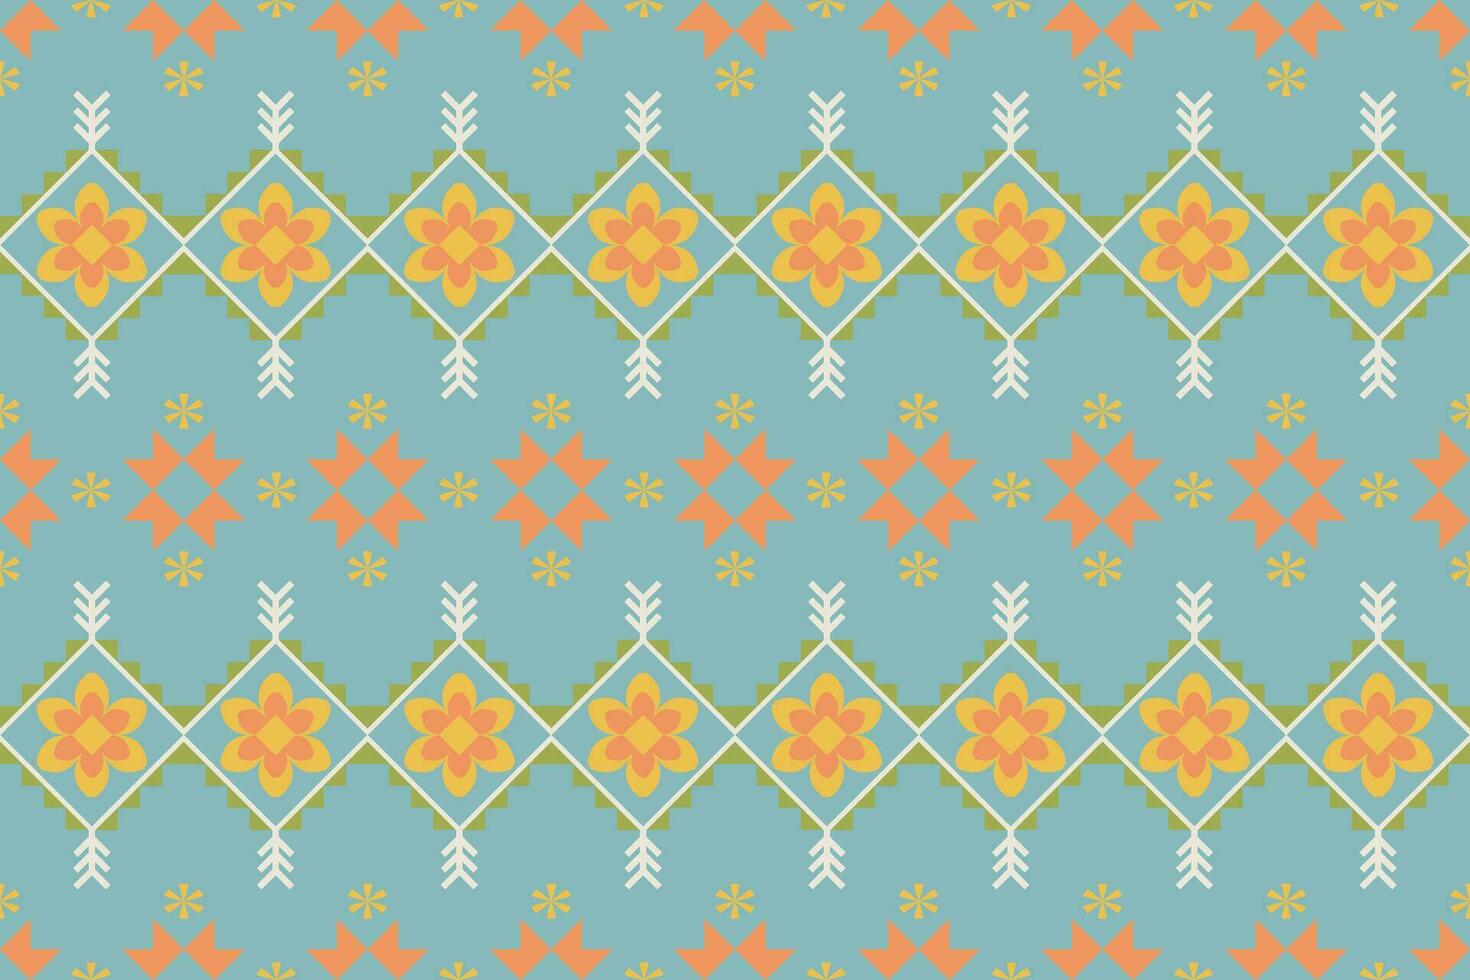 Ikat geometrisch Stickerei auf Farbe hintergrund.geometrisch ethnisch orientalisch Muster traditionell.aztekisch abstrakt Stil Vektor illustration.design zum Textur, Stoff, Kleidung, Verpackung, Teppich.